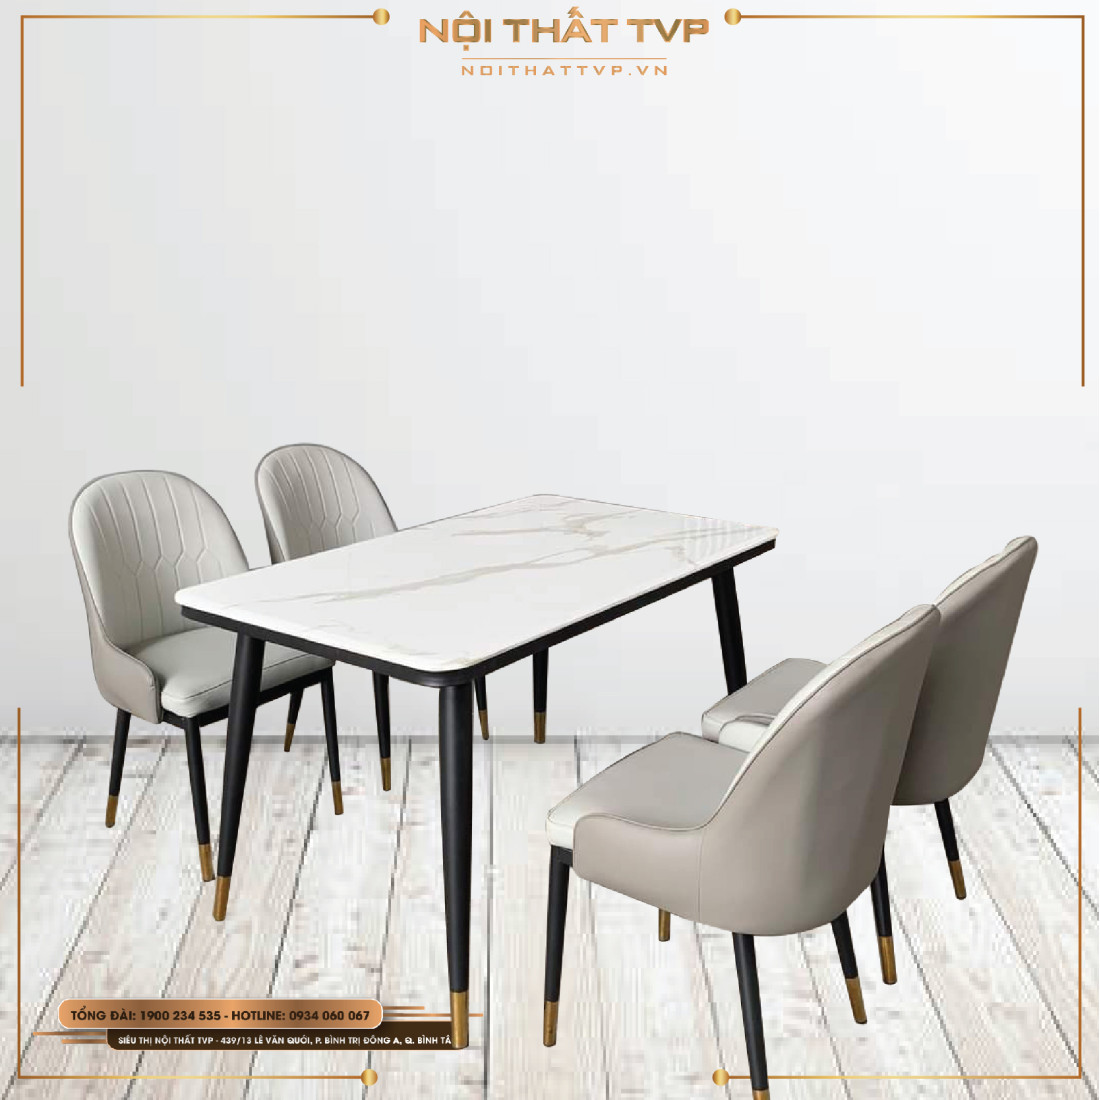 Bộ bàn ăn 4 ghế mặt đá Marble nhập khẩu 2024 sẽ mang đến cho bạn trải nghiệm ẩm thực thú vị hơn bao giờ hết. Thiết kế đẹp mắt bằng đá Marble sang trọng kết hợp với bộ bàn ăn đầy đủ đem lại không gian ấm cúng và đẳng cấp cho căn nhà của bạn.